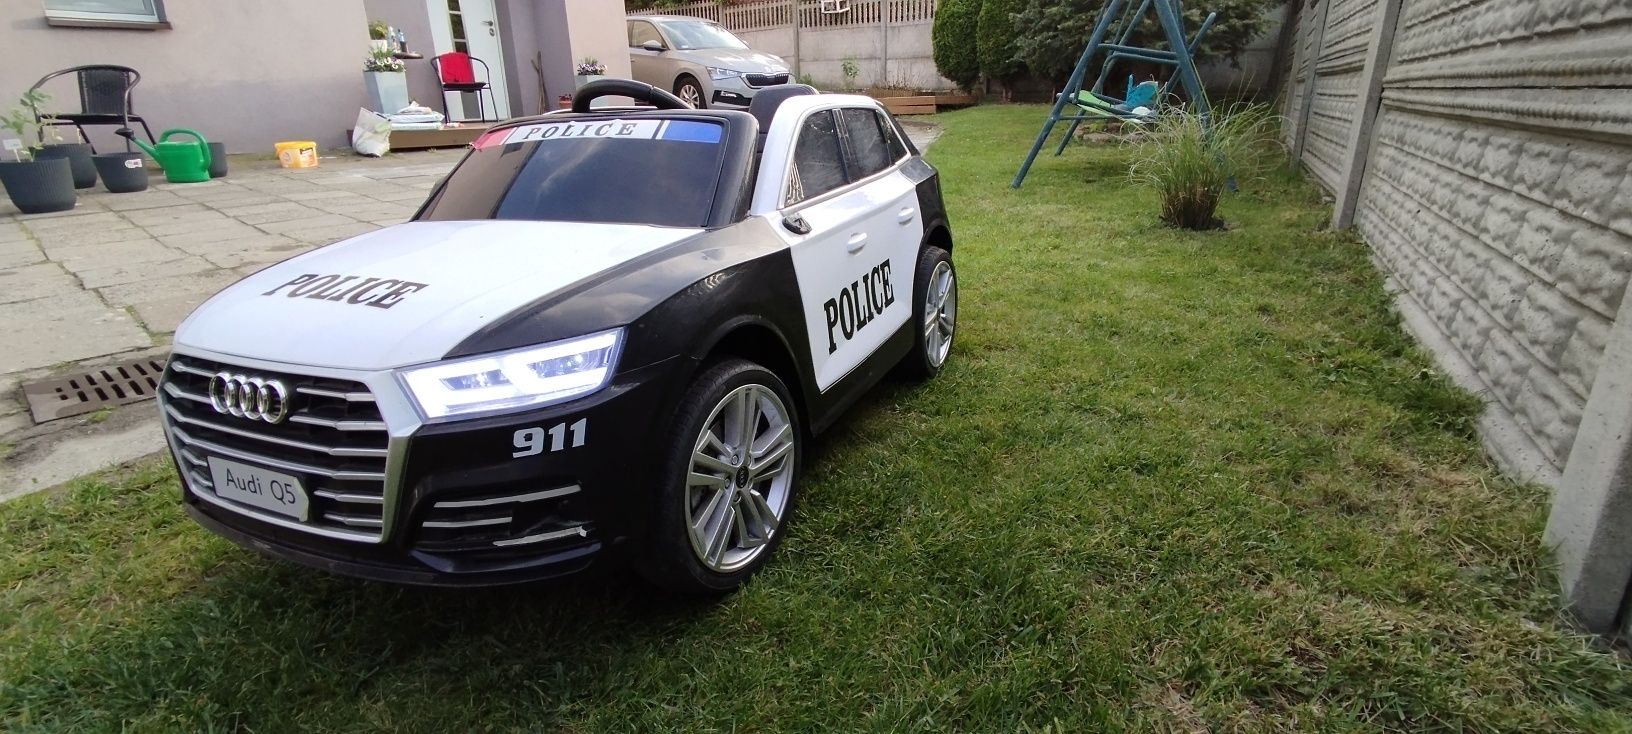 Autko elektryczne Audi Q5 Policja dla dziecka